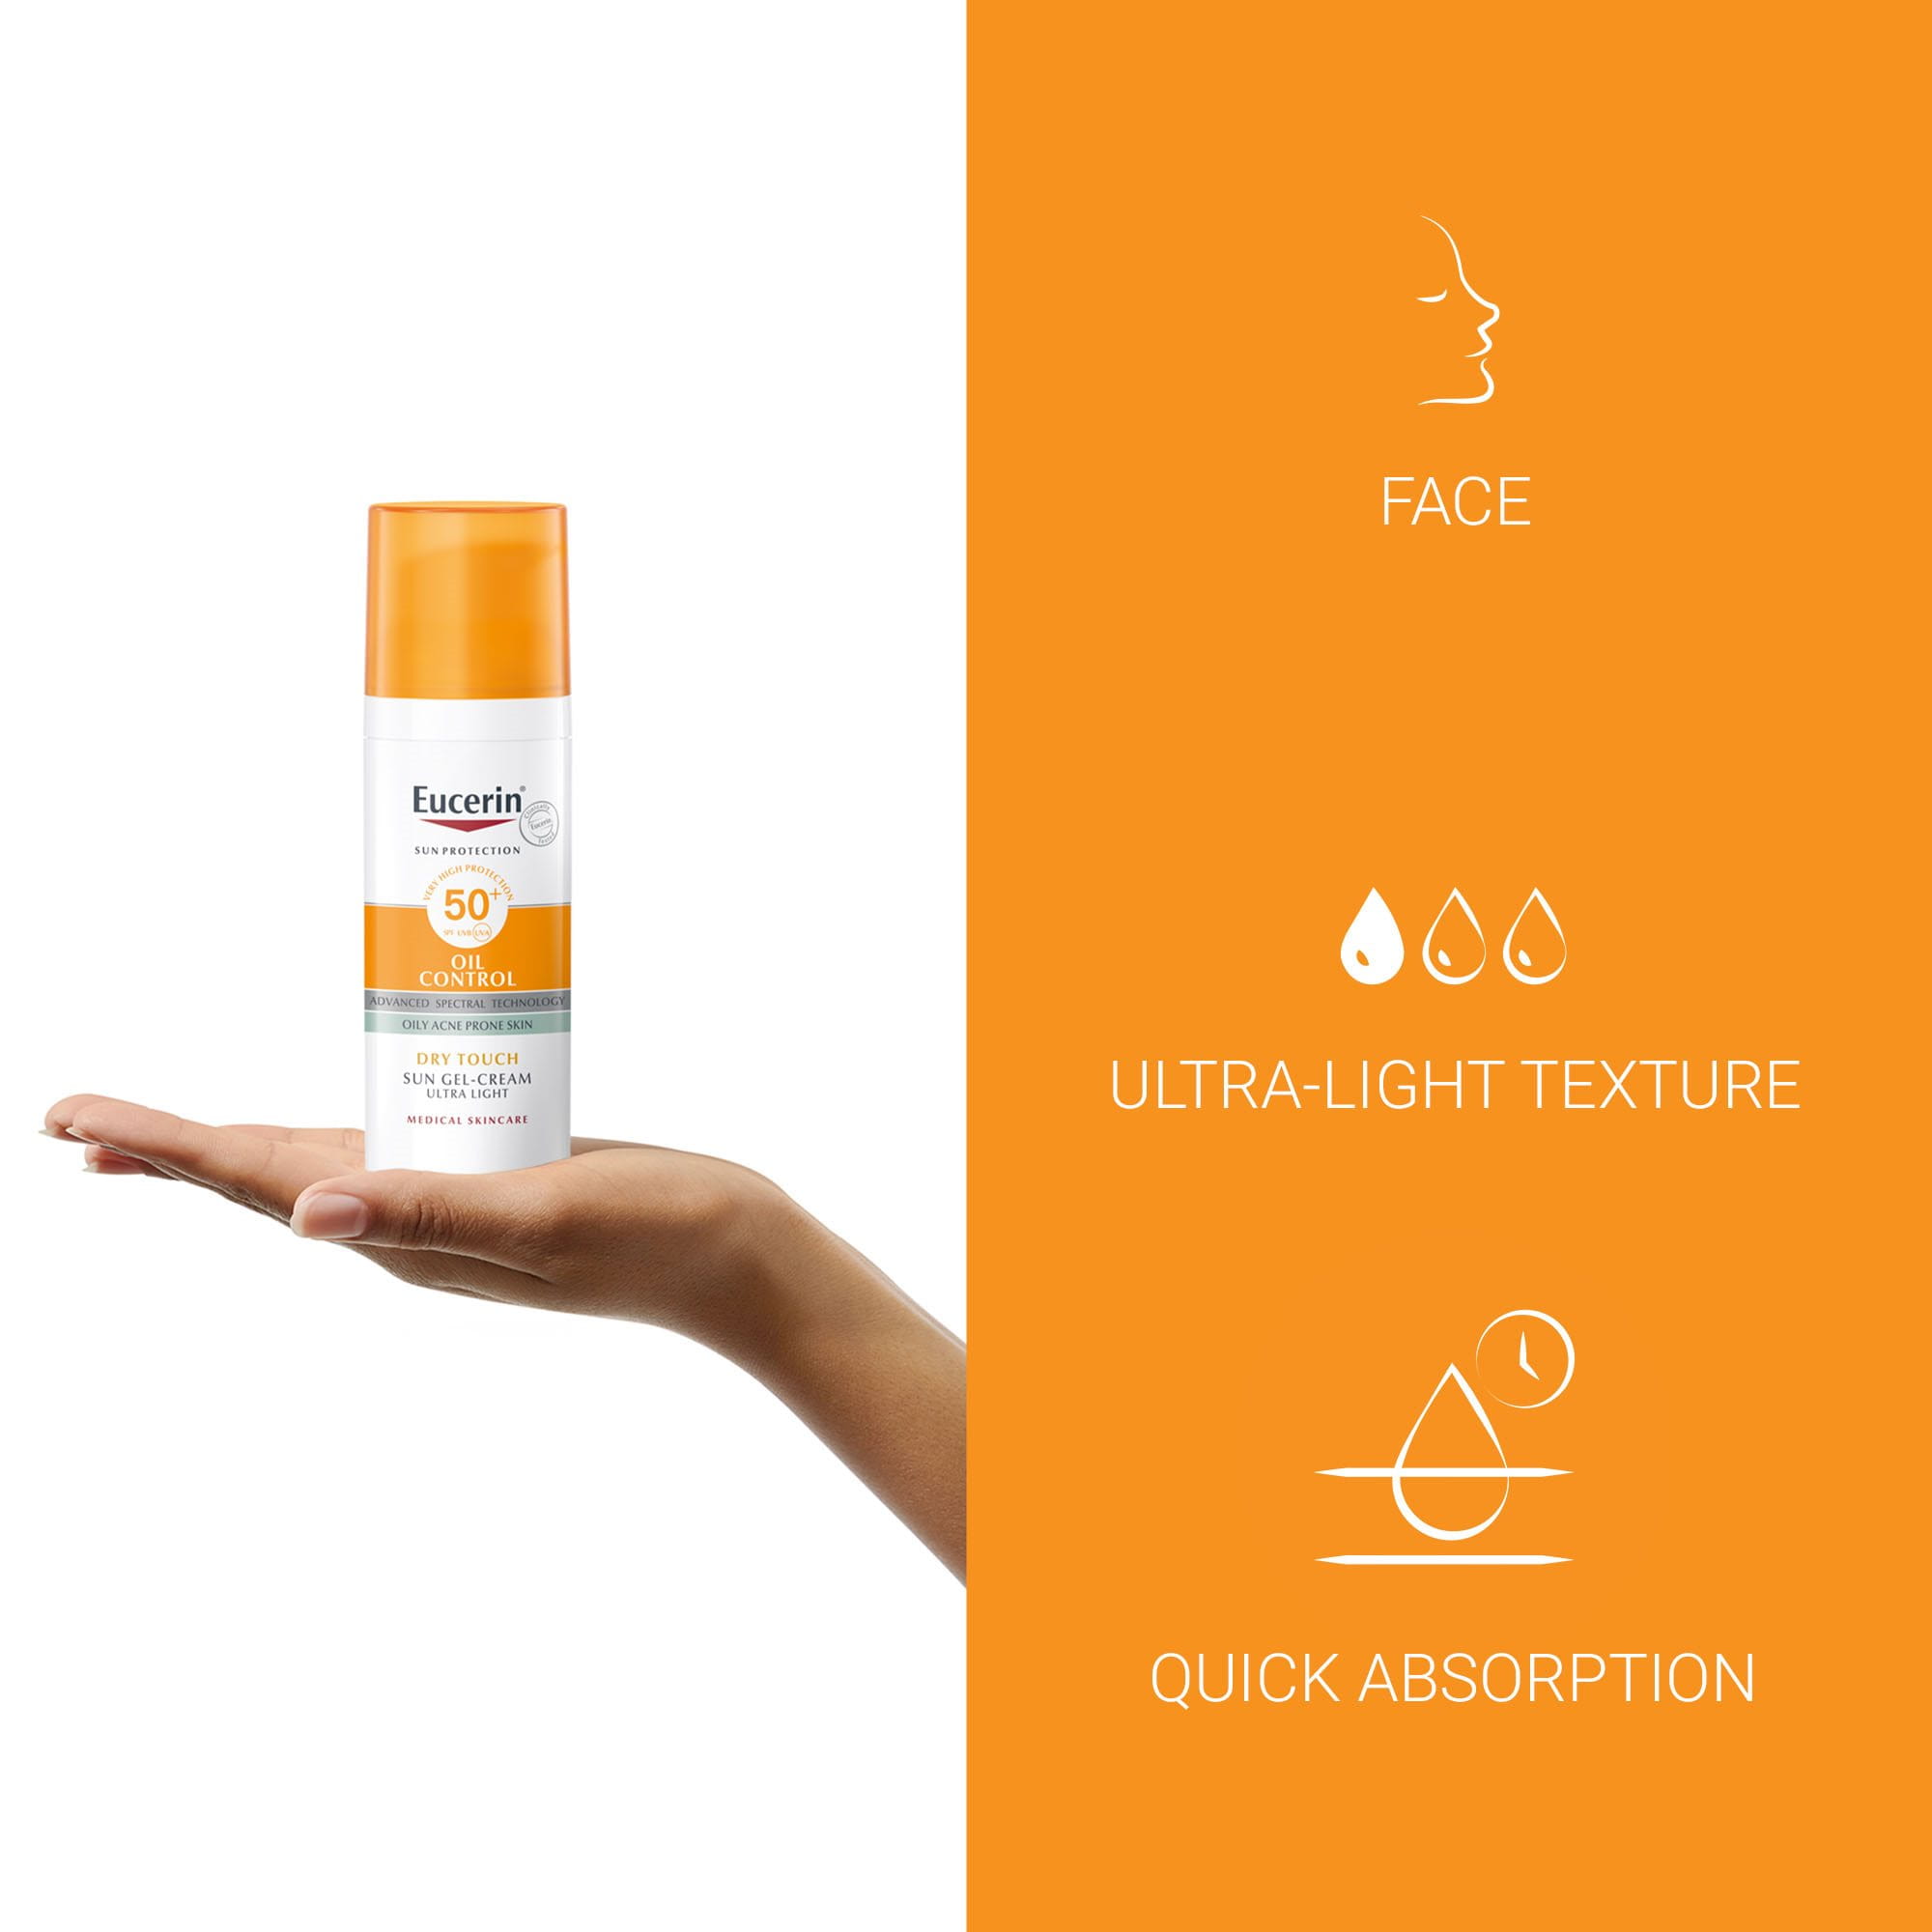 Sun Gel-Cream Oil Control SPF 30, sunscreen for oily, acne-prone skin